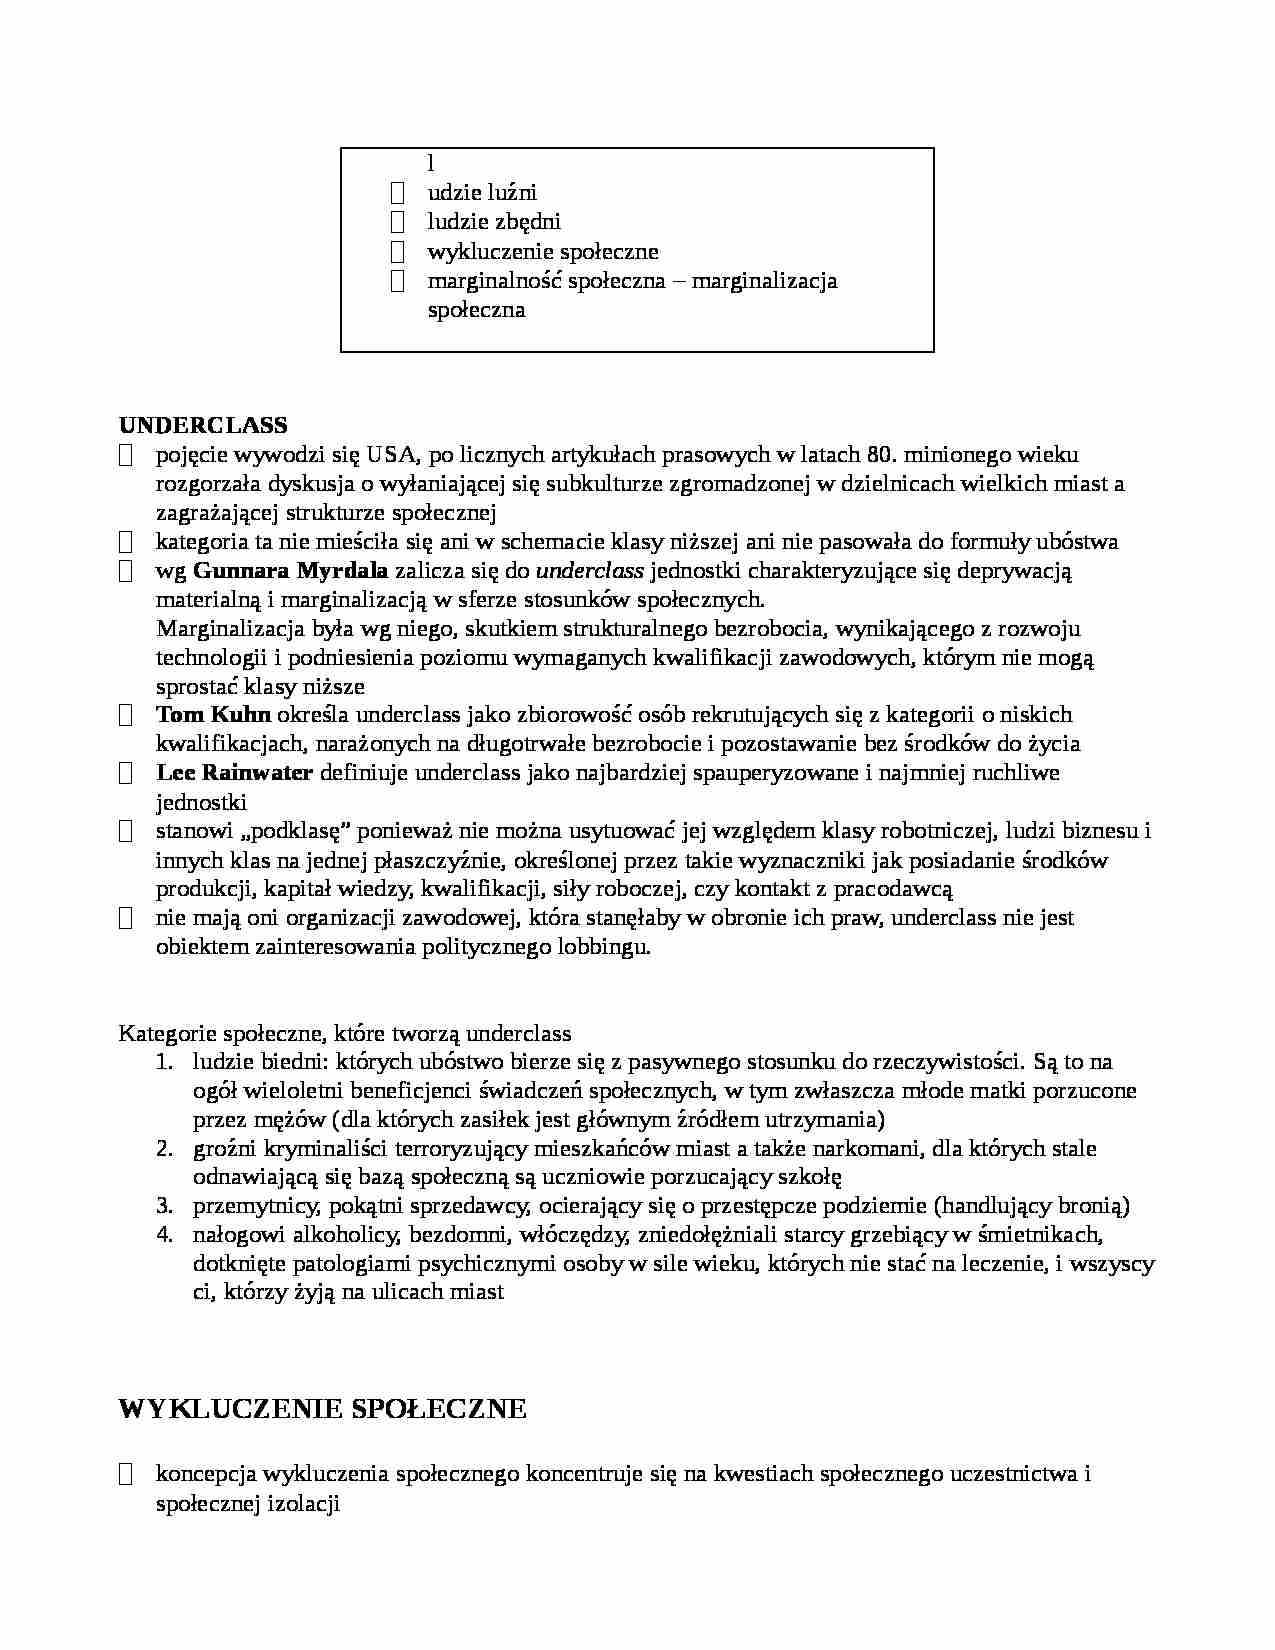 Dynamika rozwoju współczesngo społeczeństwa plskiego - notatki z wykładu 8 - strona 1